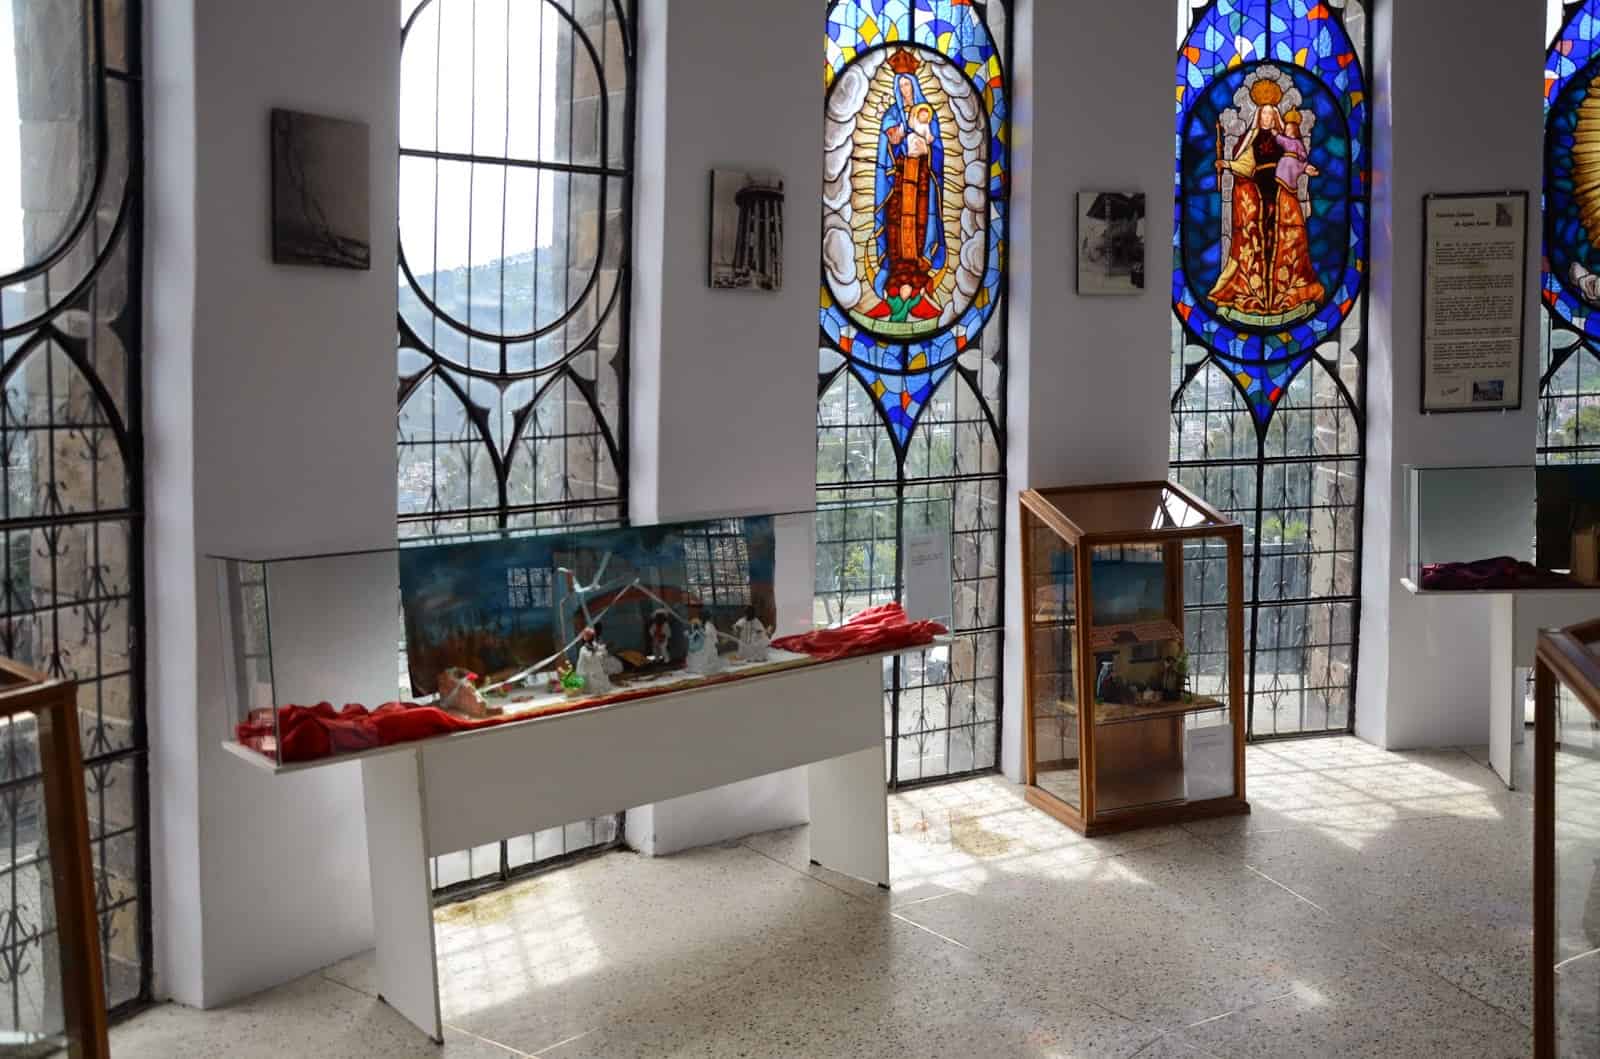 Museum inside La Virgen de Quito at El Panecillo in Quito, Ecuador